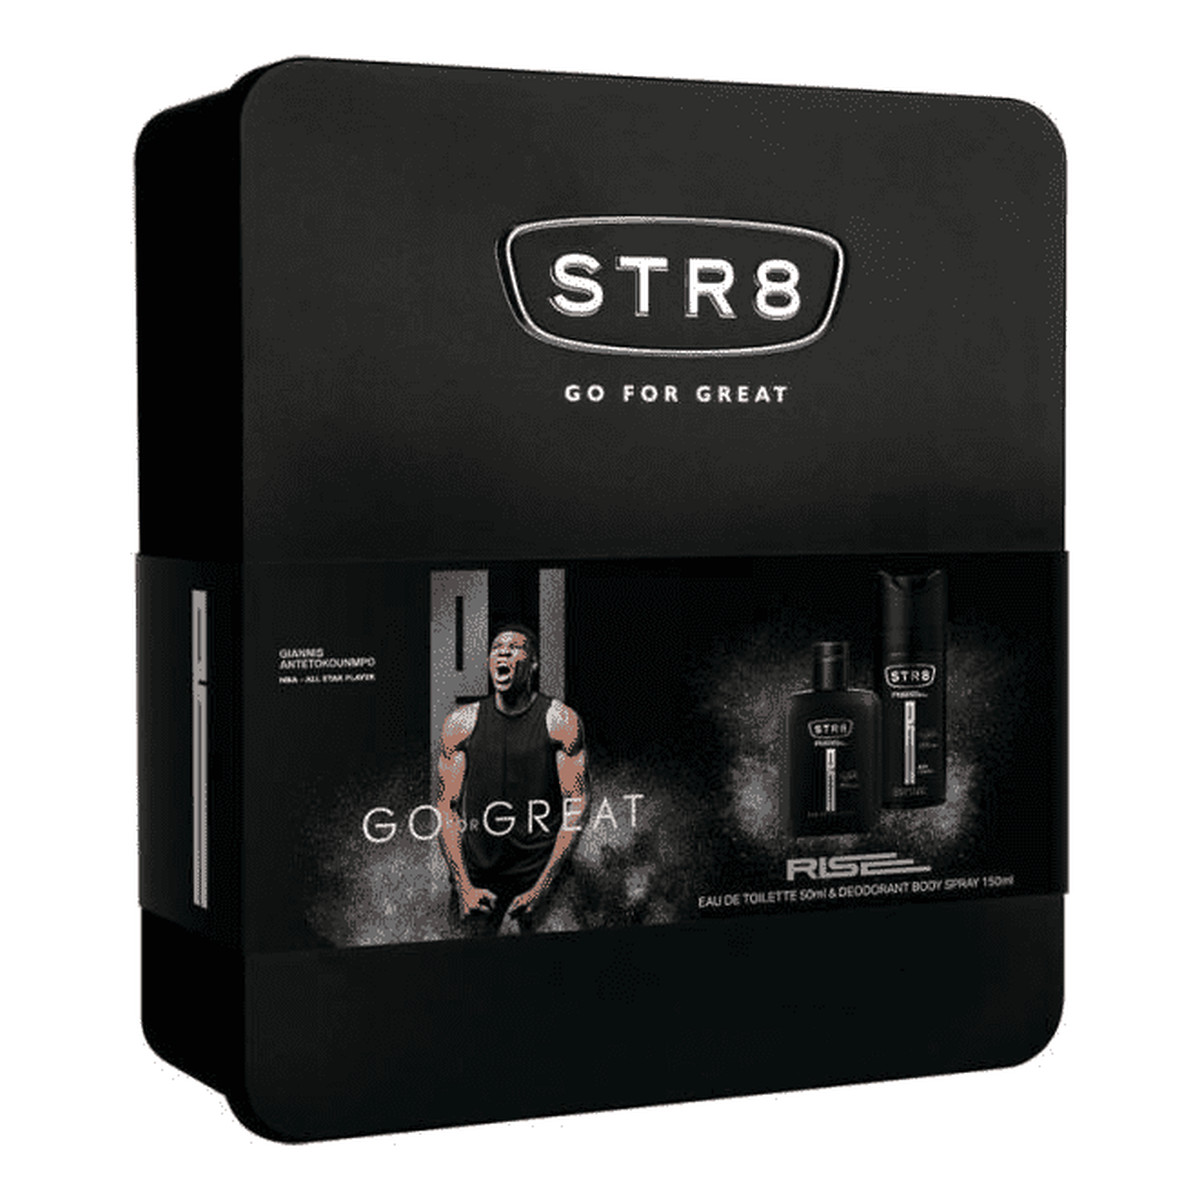 STR8 Rise zestaw prezentowy (woda toaletowa 100ml + dezodorant spray 150ml + puszka) 150ml